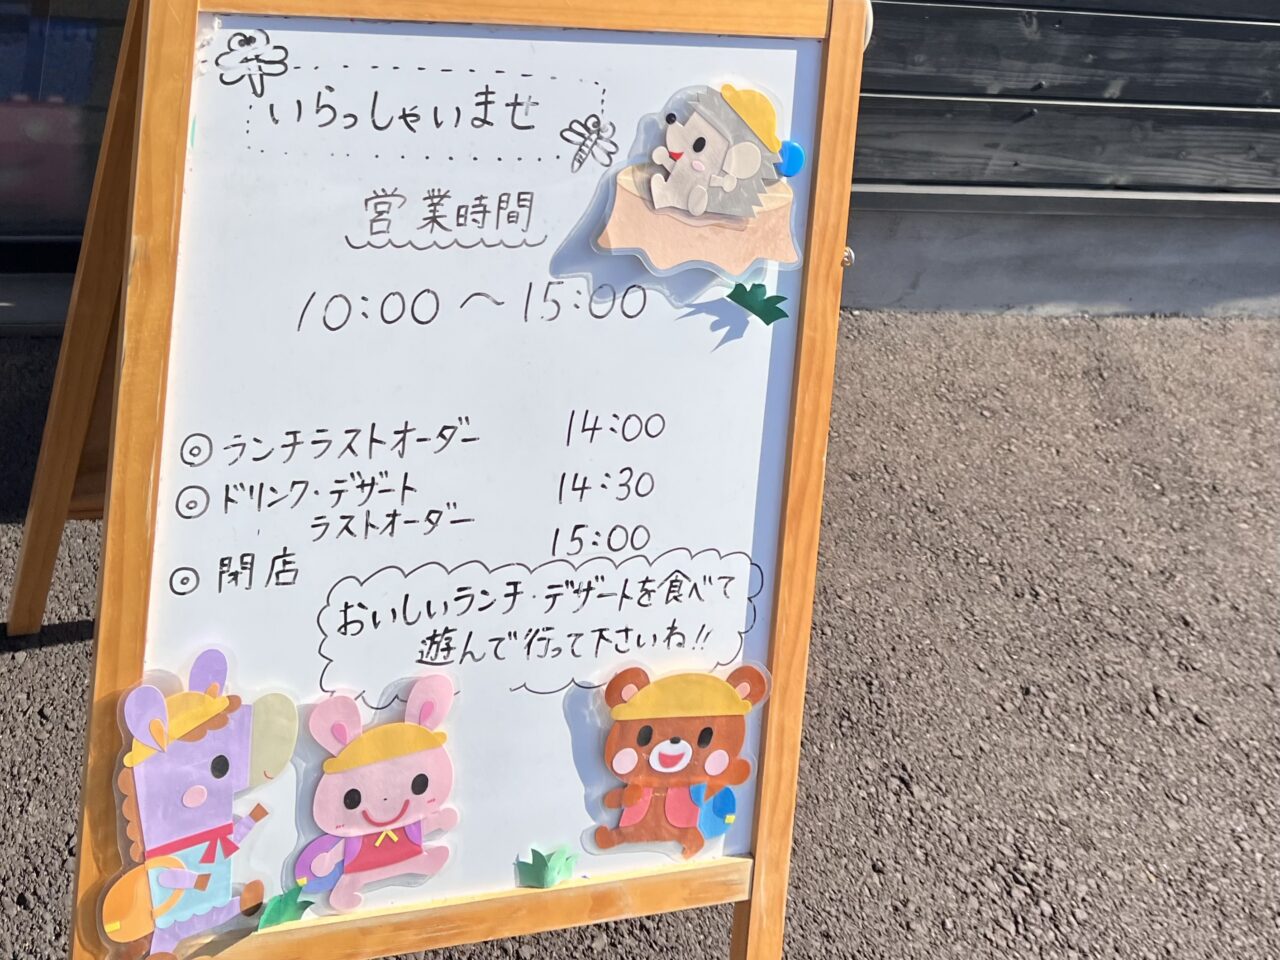 大阪市旭区旭清水幼稚園をリノベーションした遊べるカフェ「未来ラボえん」の掲示板